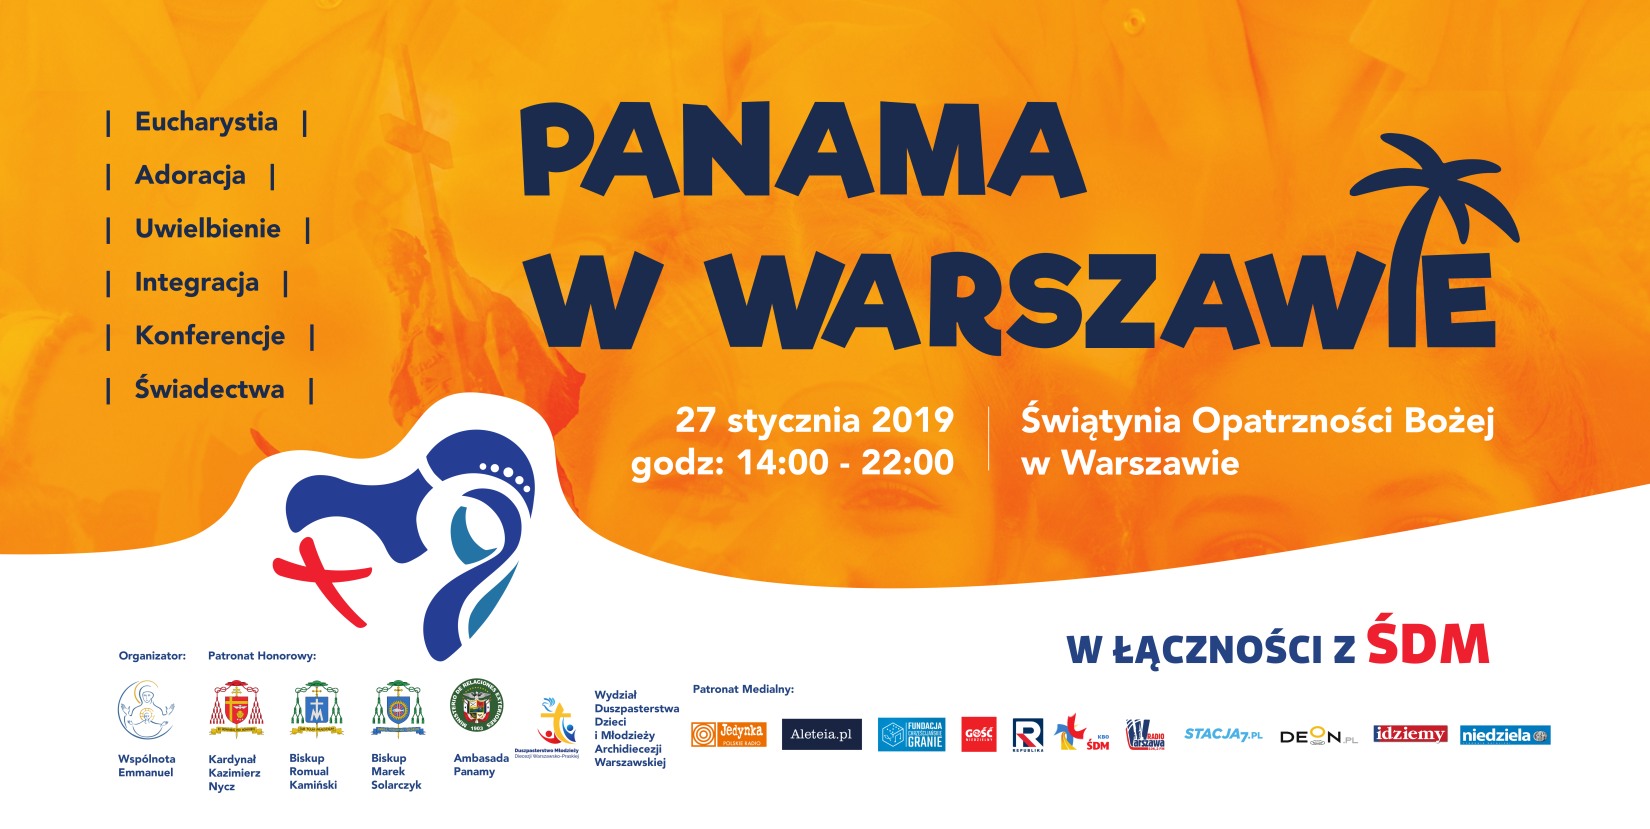 Panama w Warszawie 2019